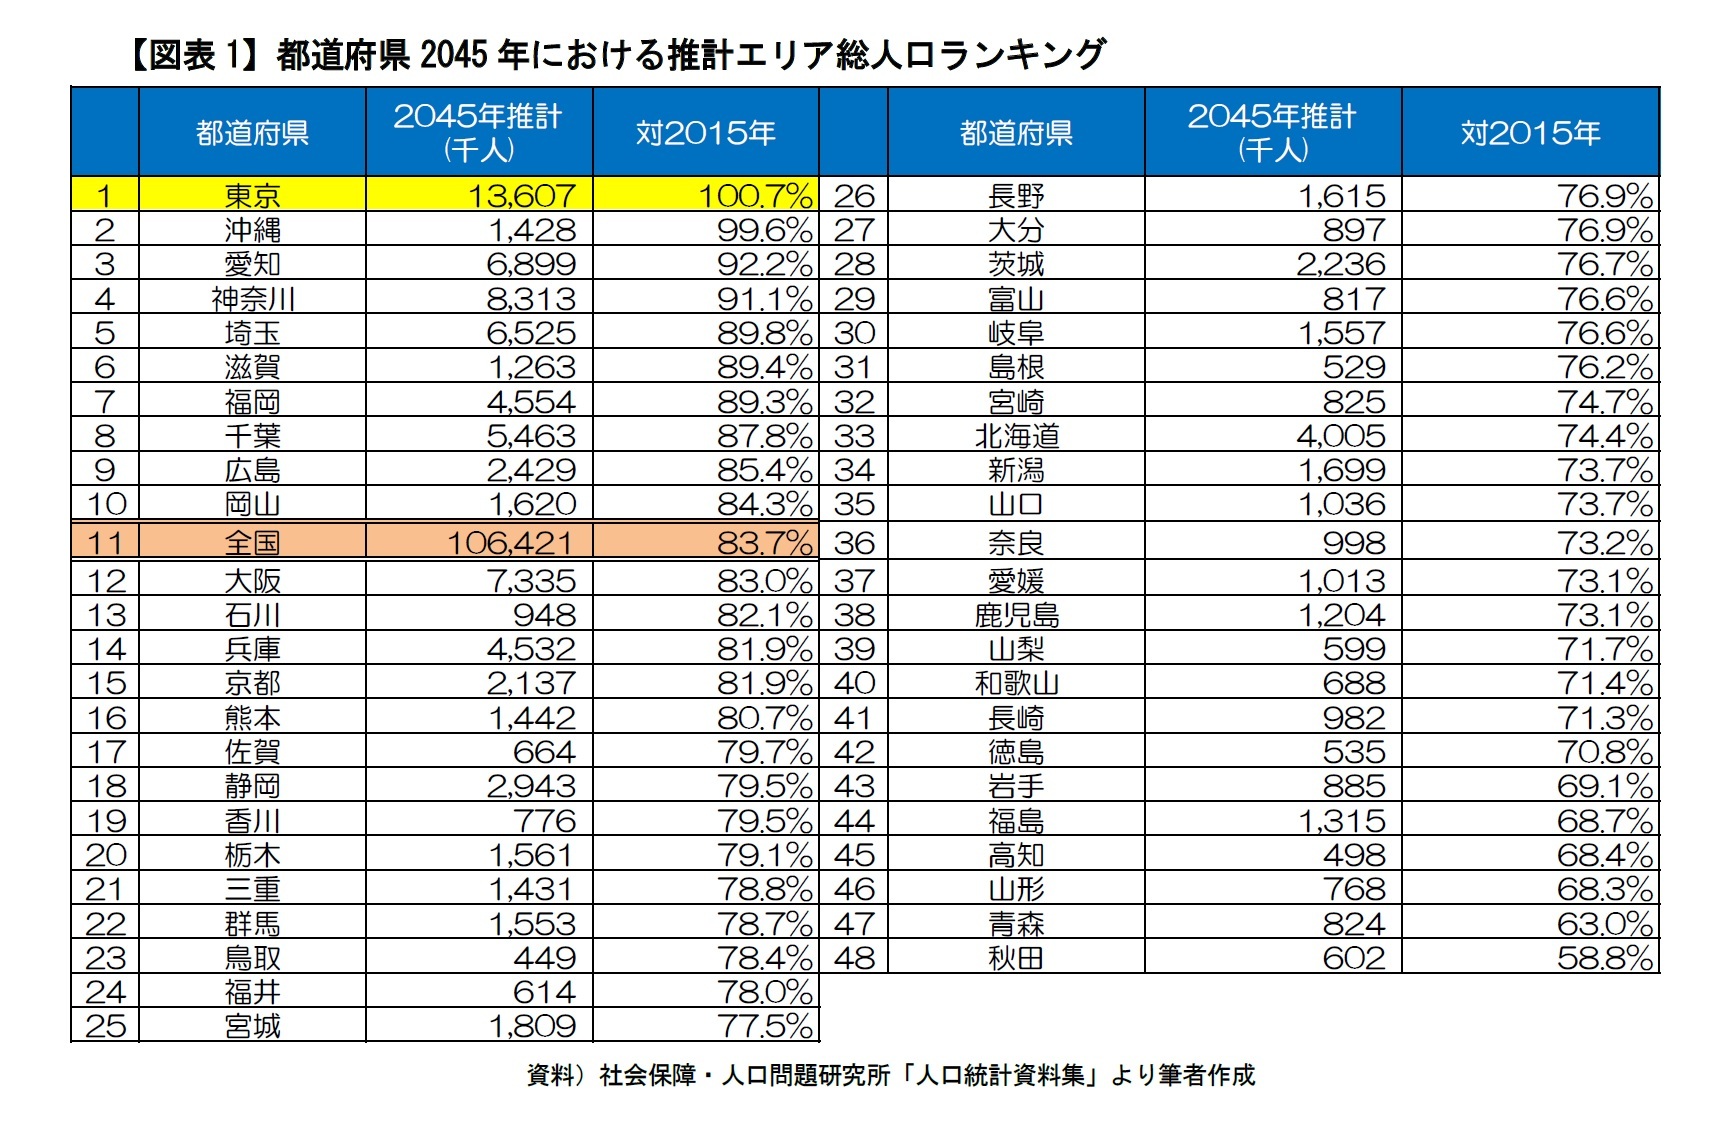 人口減少社会データ解説 なぜ東京都の子ども人口だけが増加するのか 上 10年間エリア子ども人口の増減 都道府県出生率と相関ならず ニッセイ基礎研究所